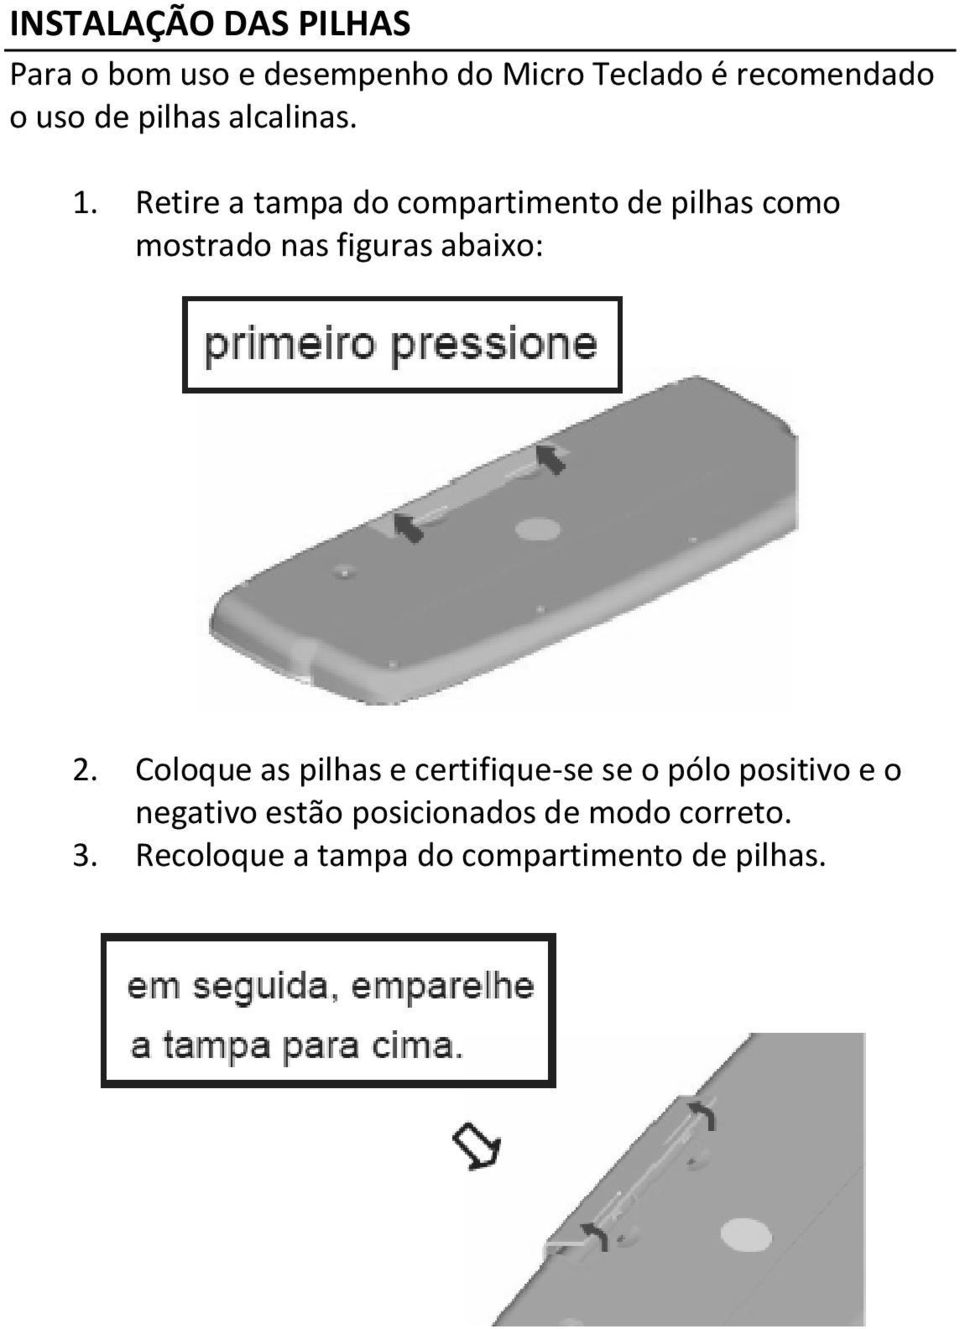 Retire a tampa do compartimento de pilhas como mostrado nas figuras abaixo: 2.